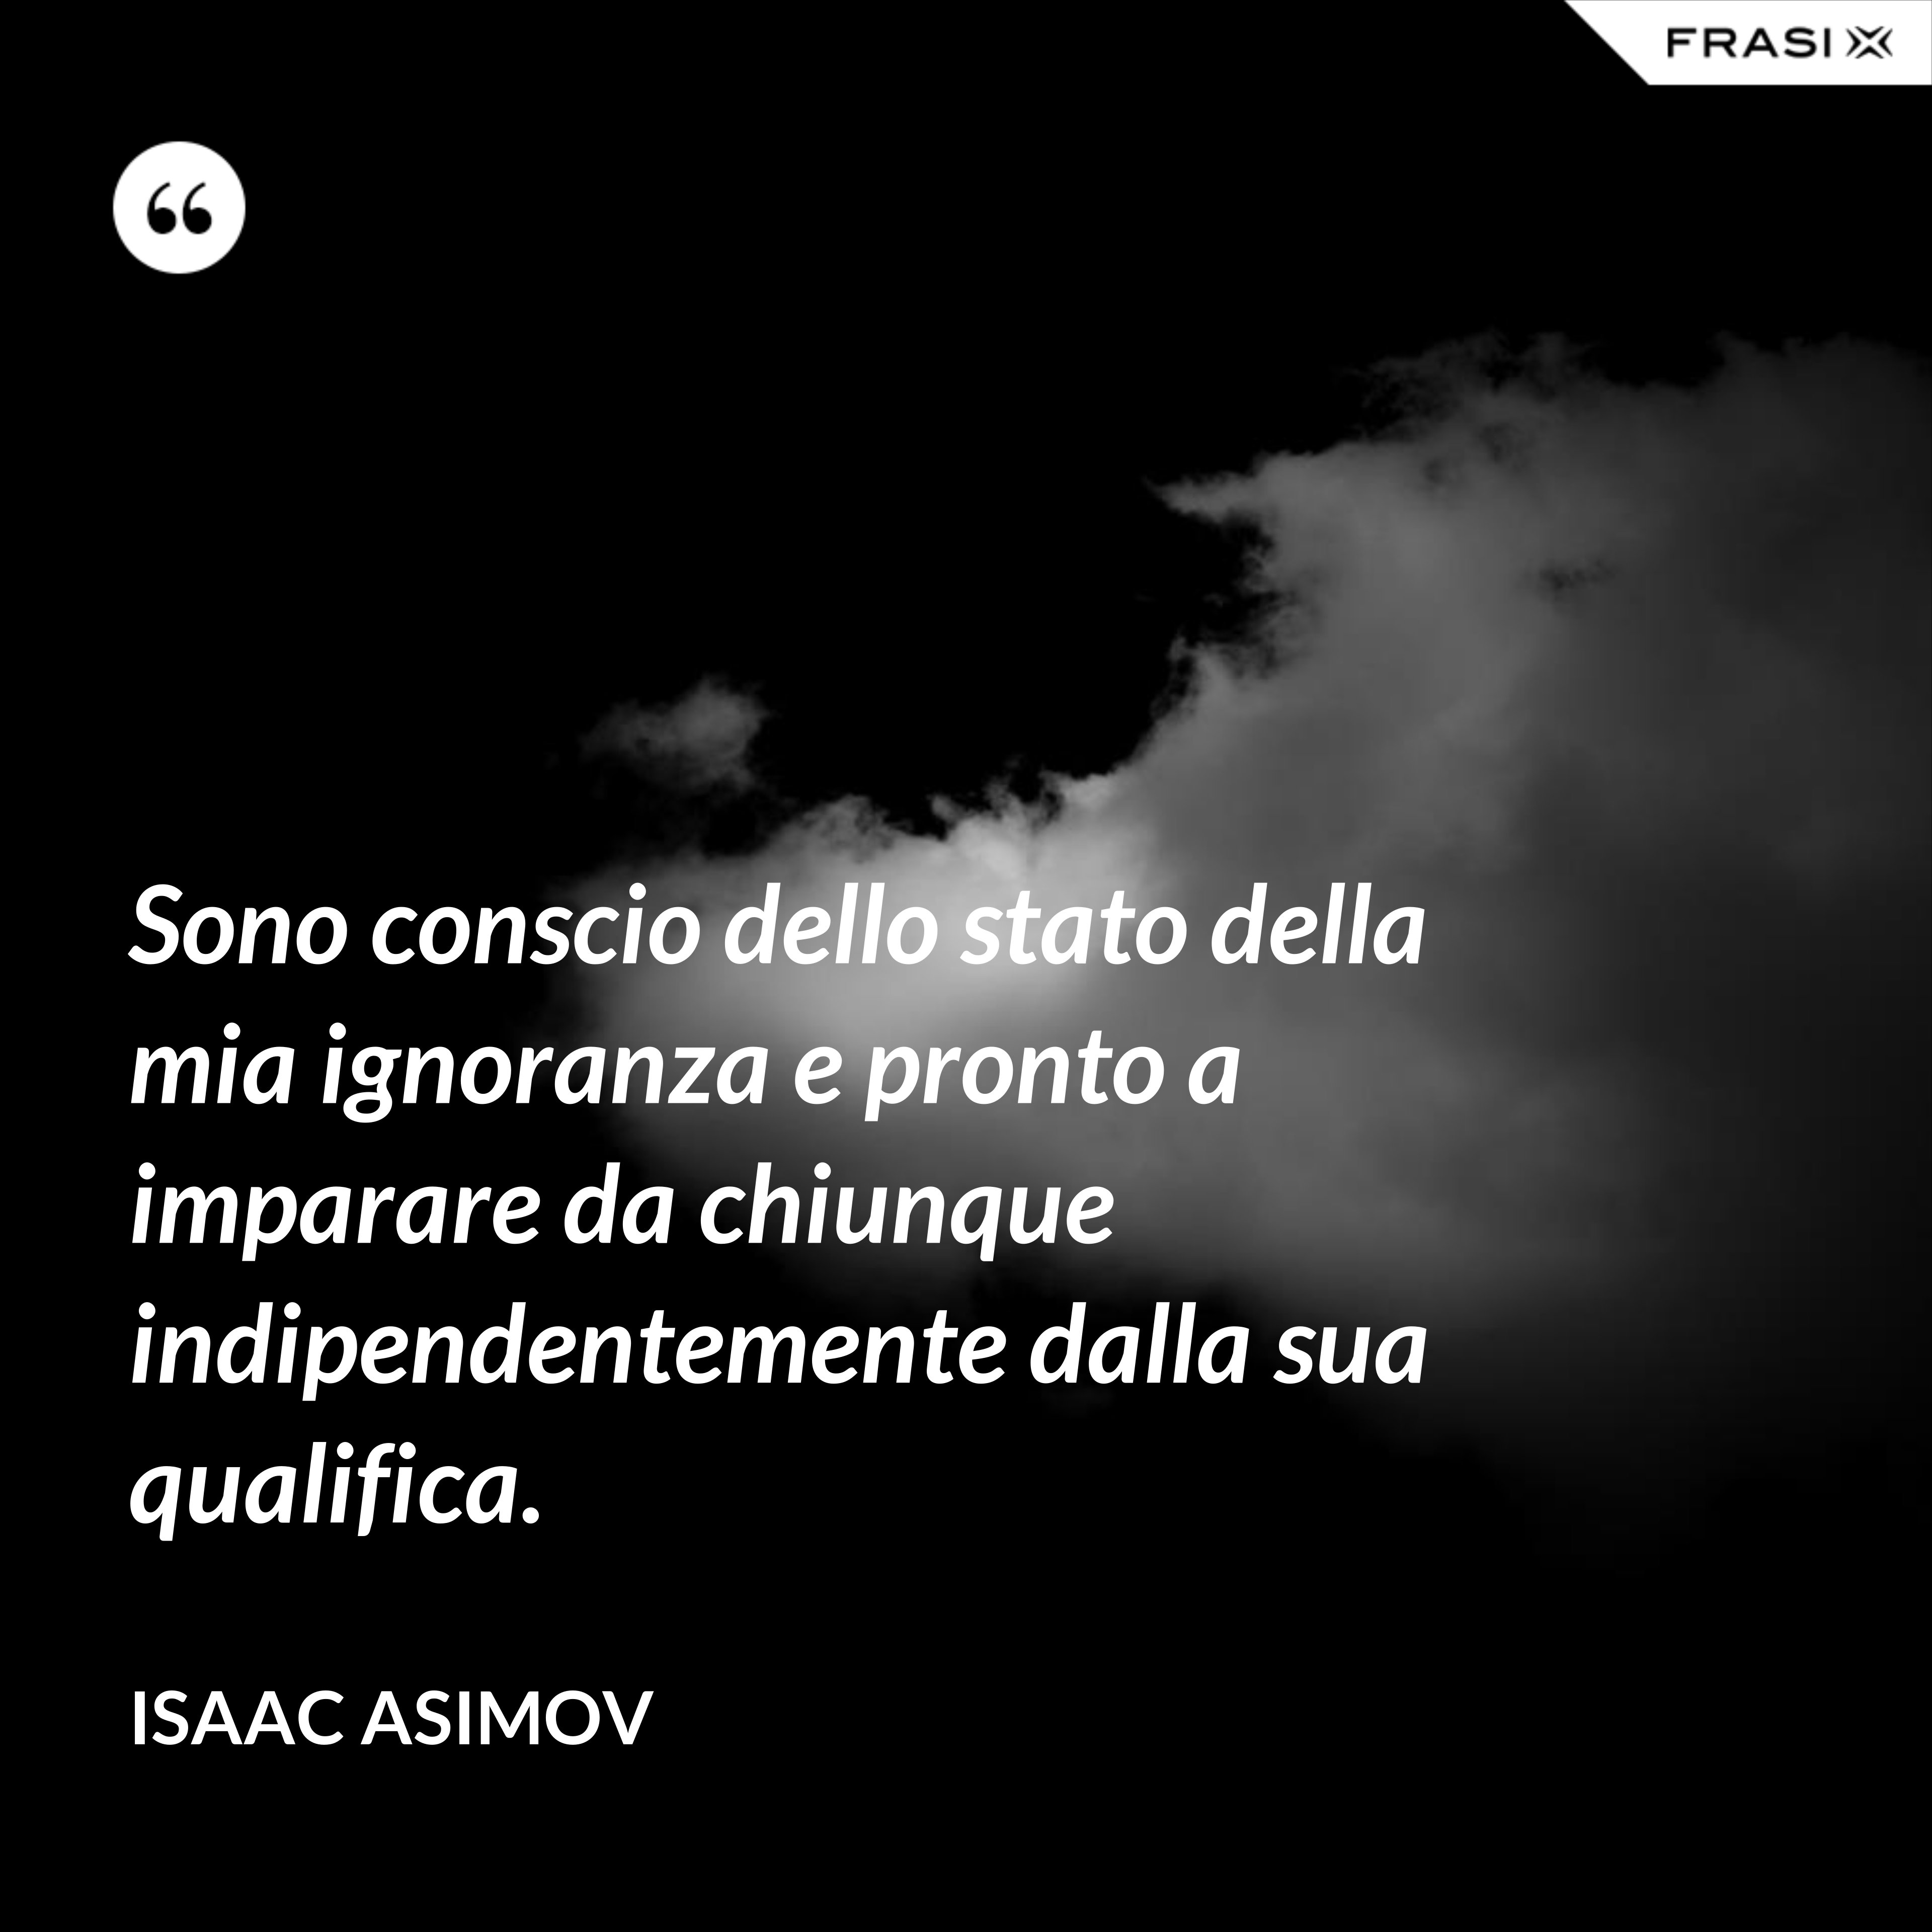 Sono conscio dello stato della mia ignoranza e pronto a imparare da chiunque indipendentemente dalla sua qualifica. - Isaac Asimov